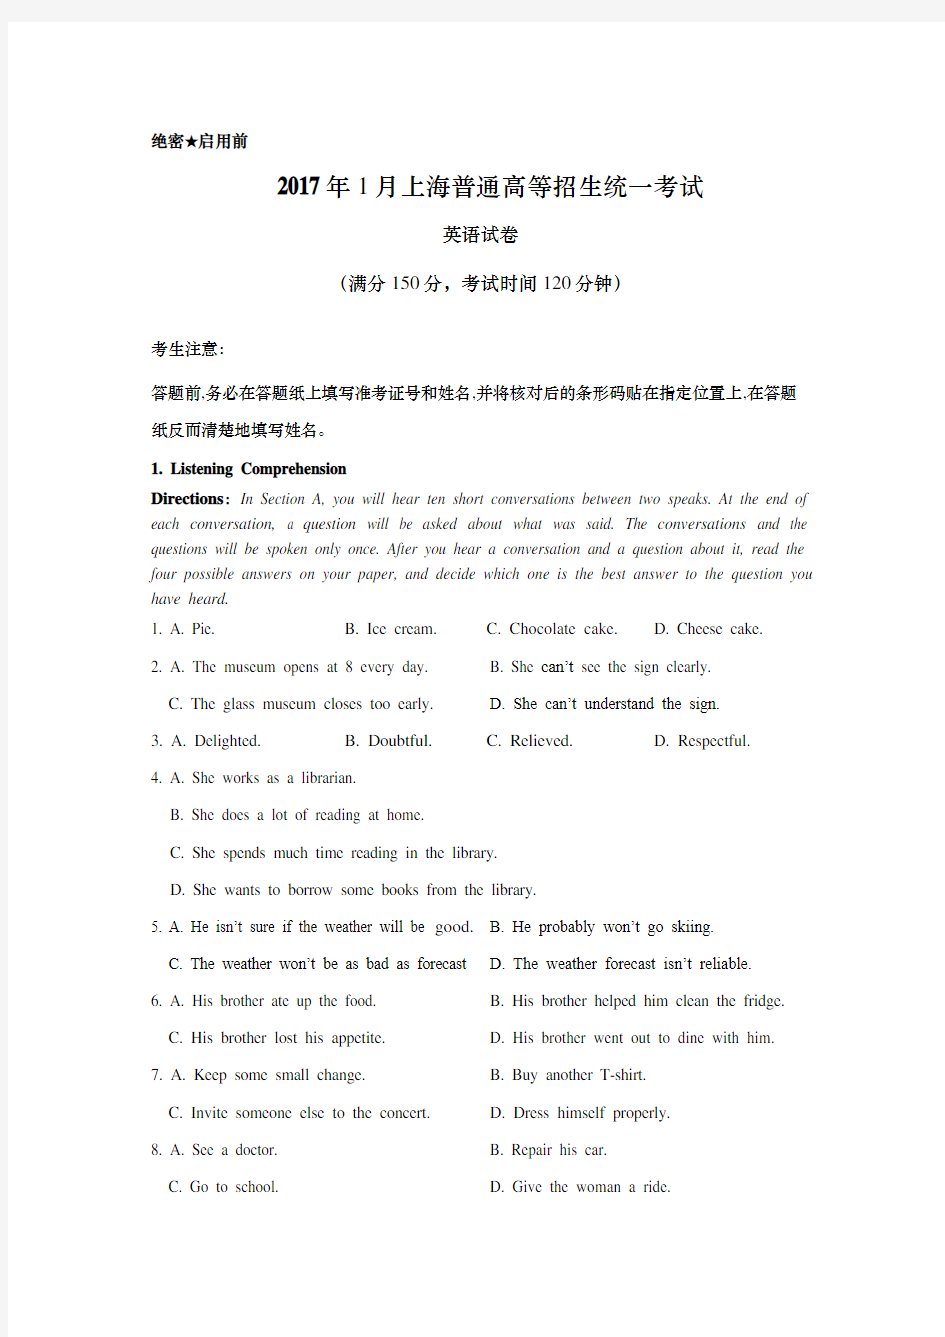 2017年上海高考春季英语真题试卷(学生版)